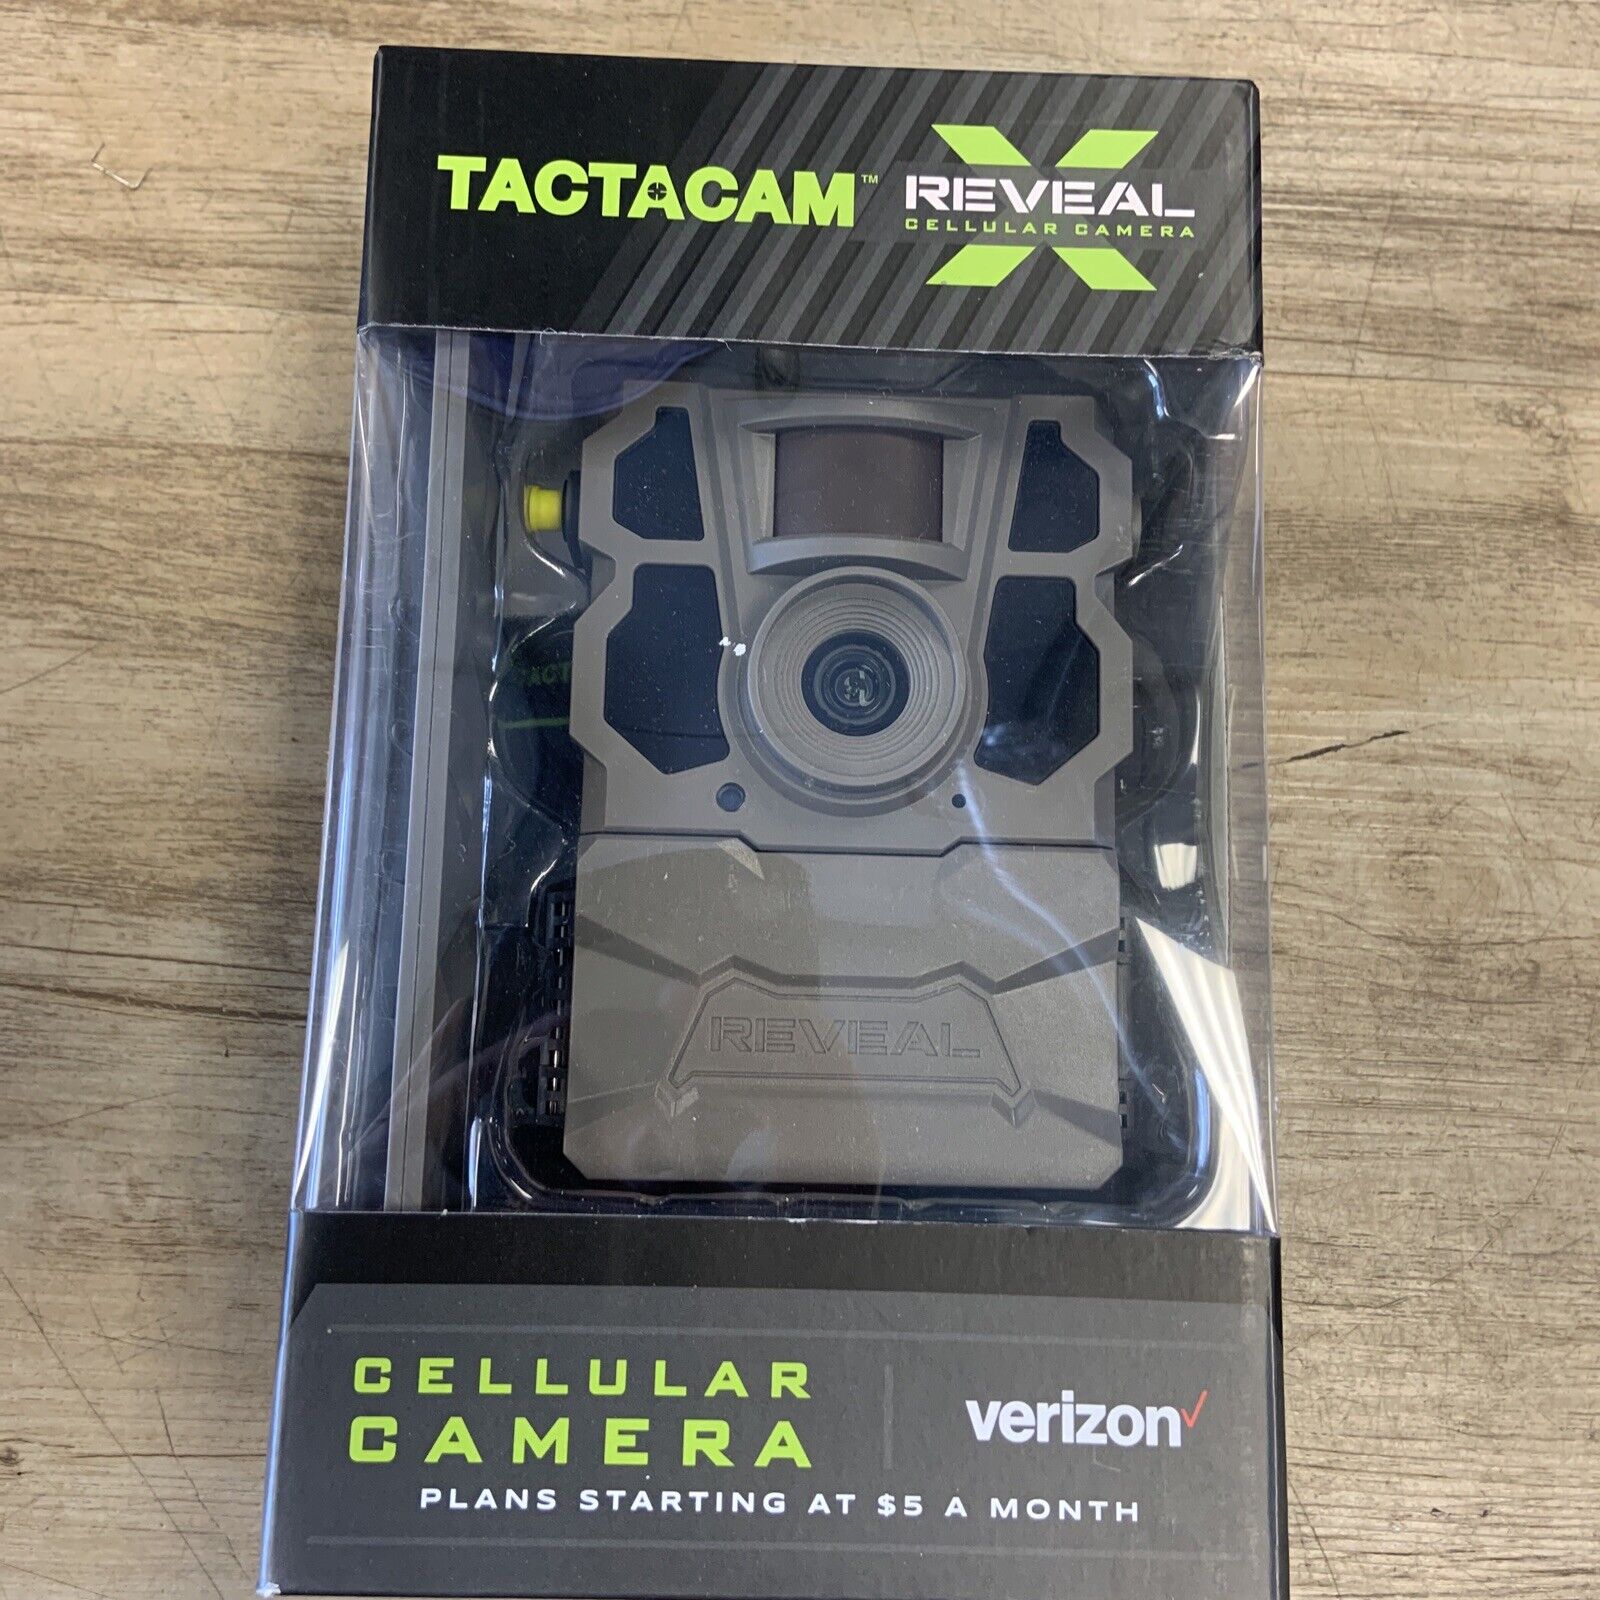 Tactacam Reveal X 24MP Trail Camera